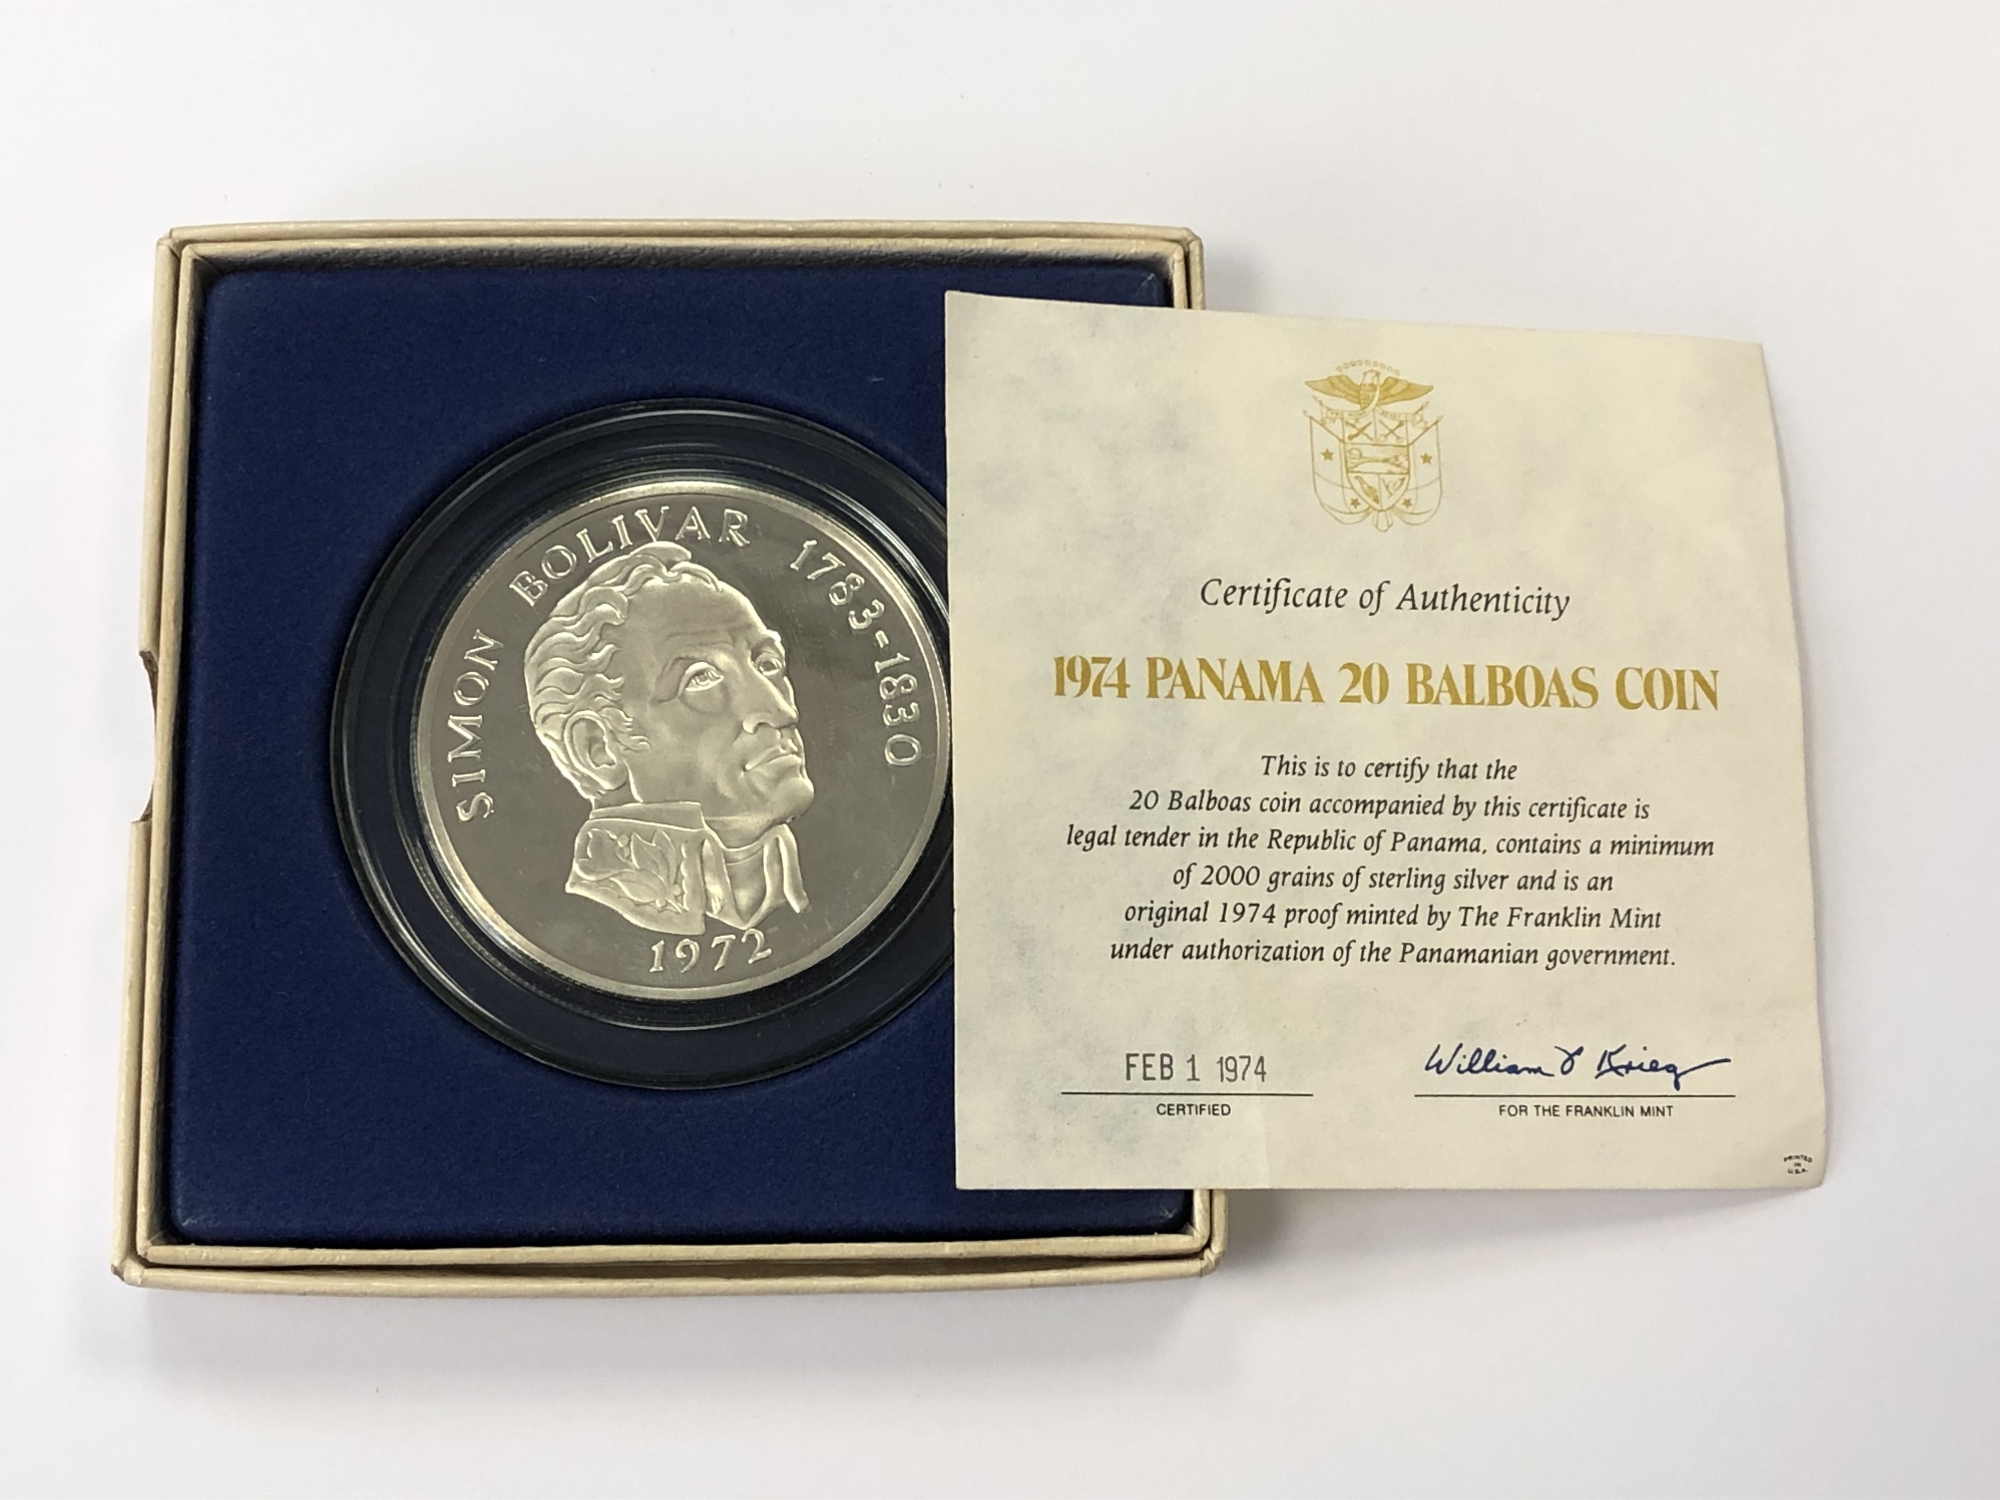 A 1974 Panama 20 Balboas silver coin,